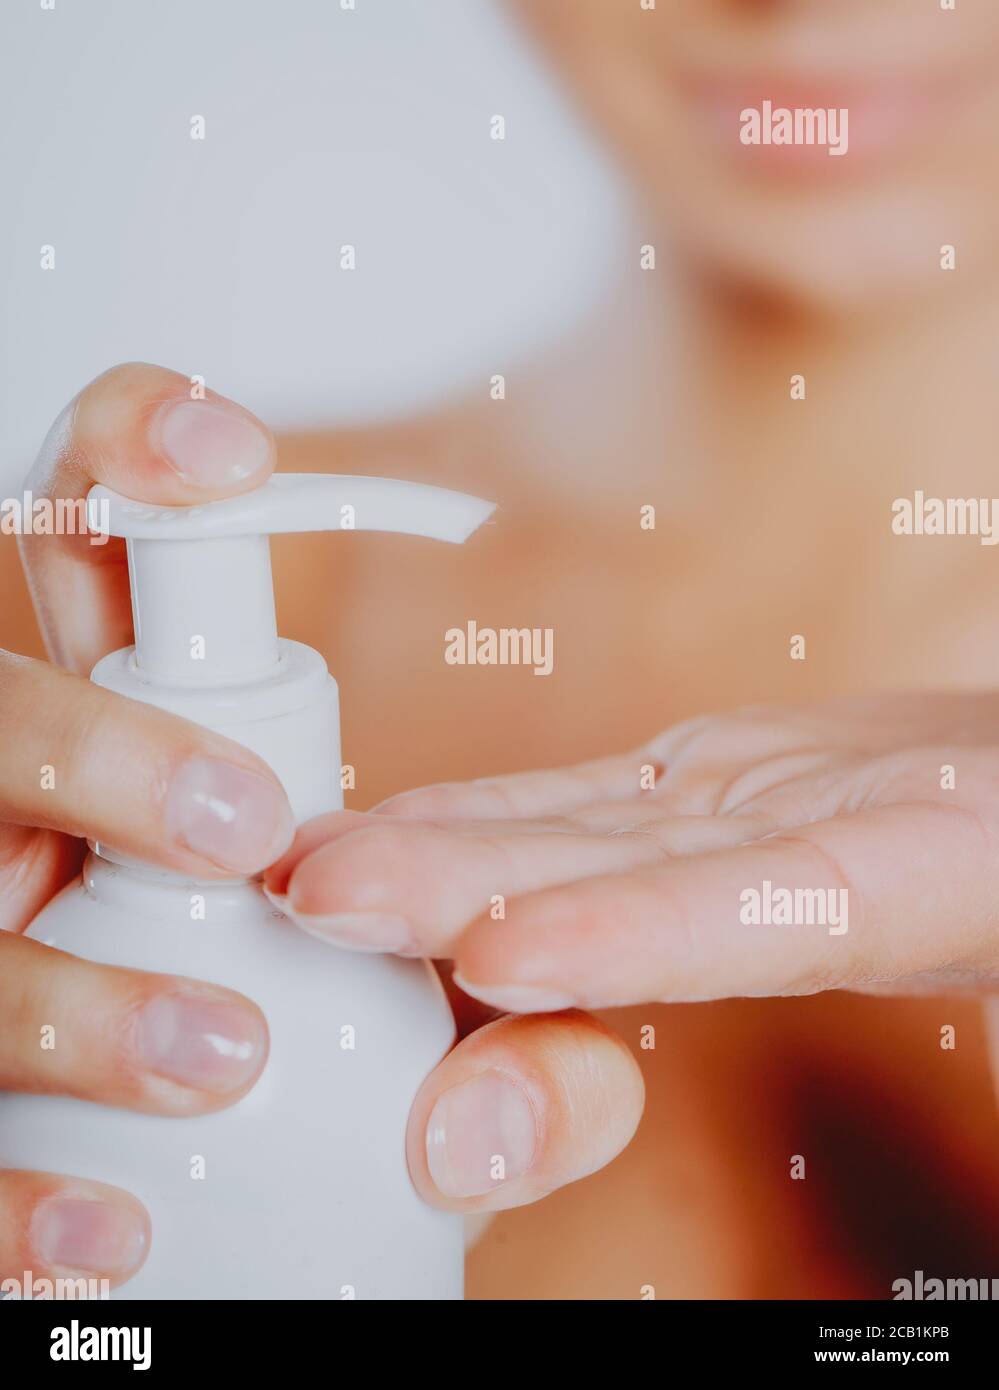 Mujer presionando el jabón líquido en su mano. Botella de jabón blanco con dispensador en la mano. Foto de stock